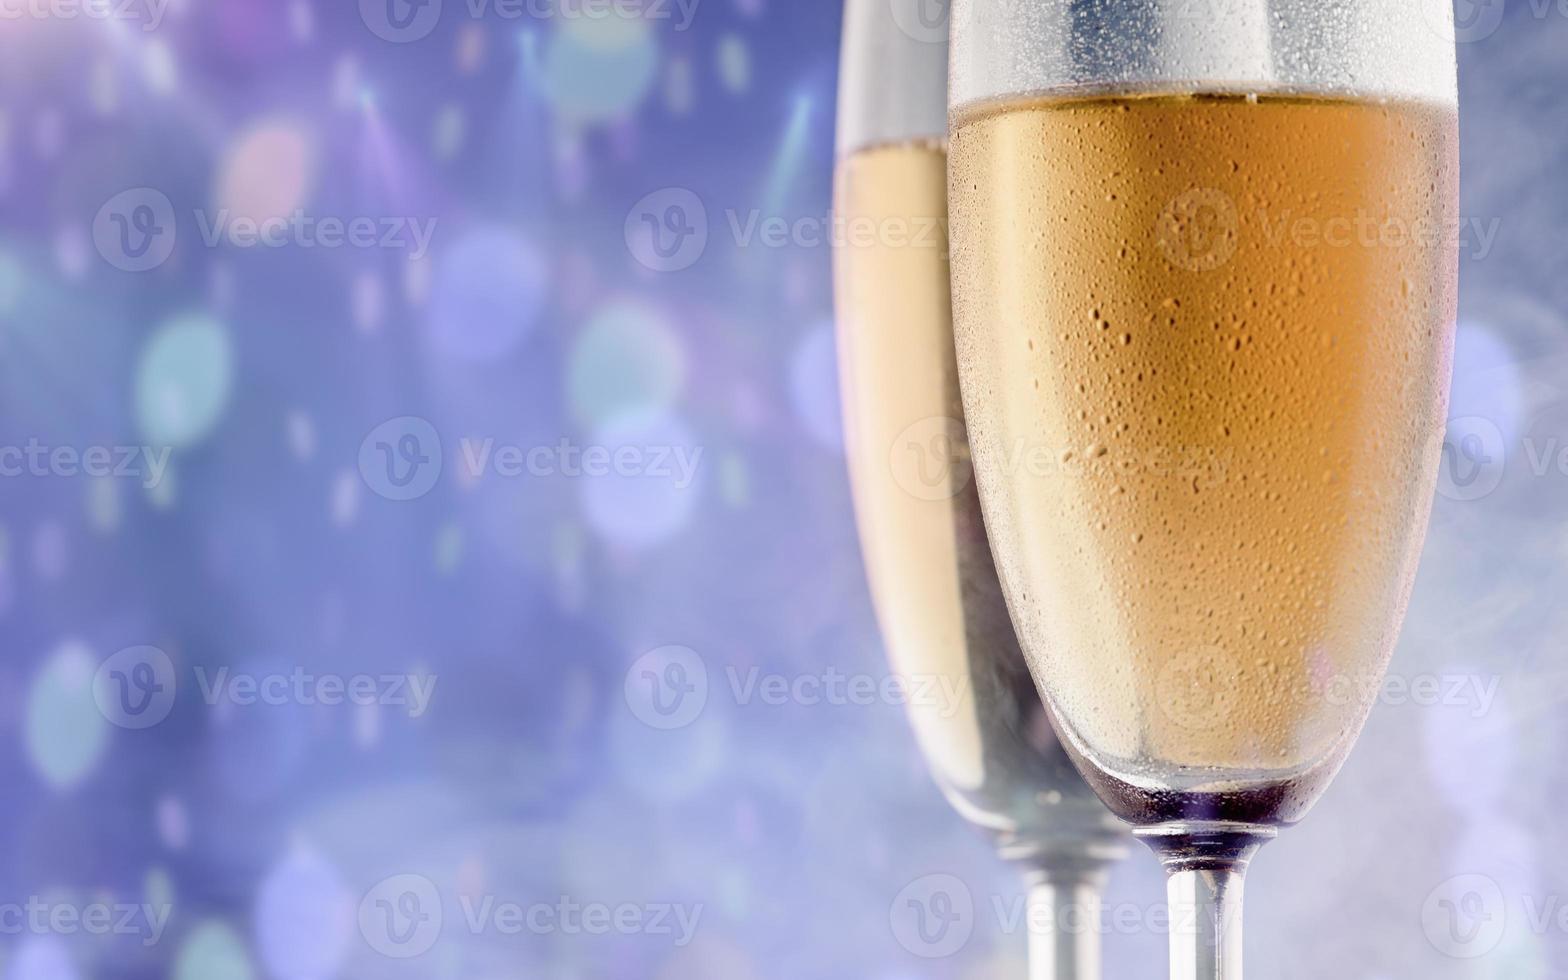 twee glazen champagne tegen een achtergrond van bokehvlekken. Kerstmis en Nieuwjaar achtergrond. foto